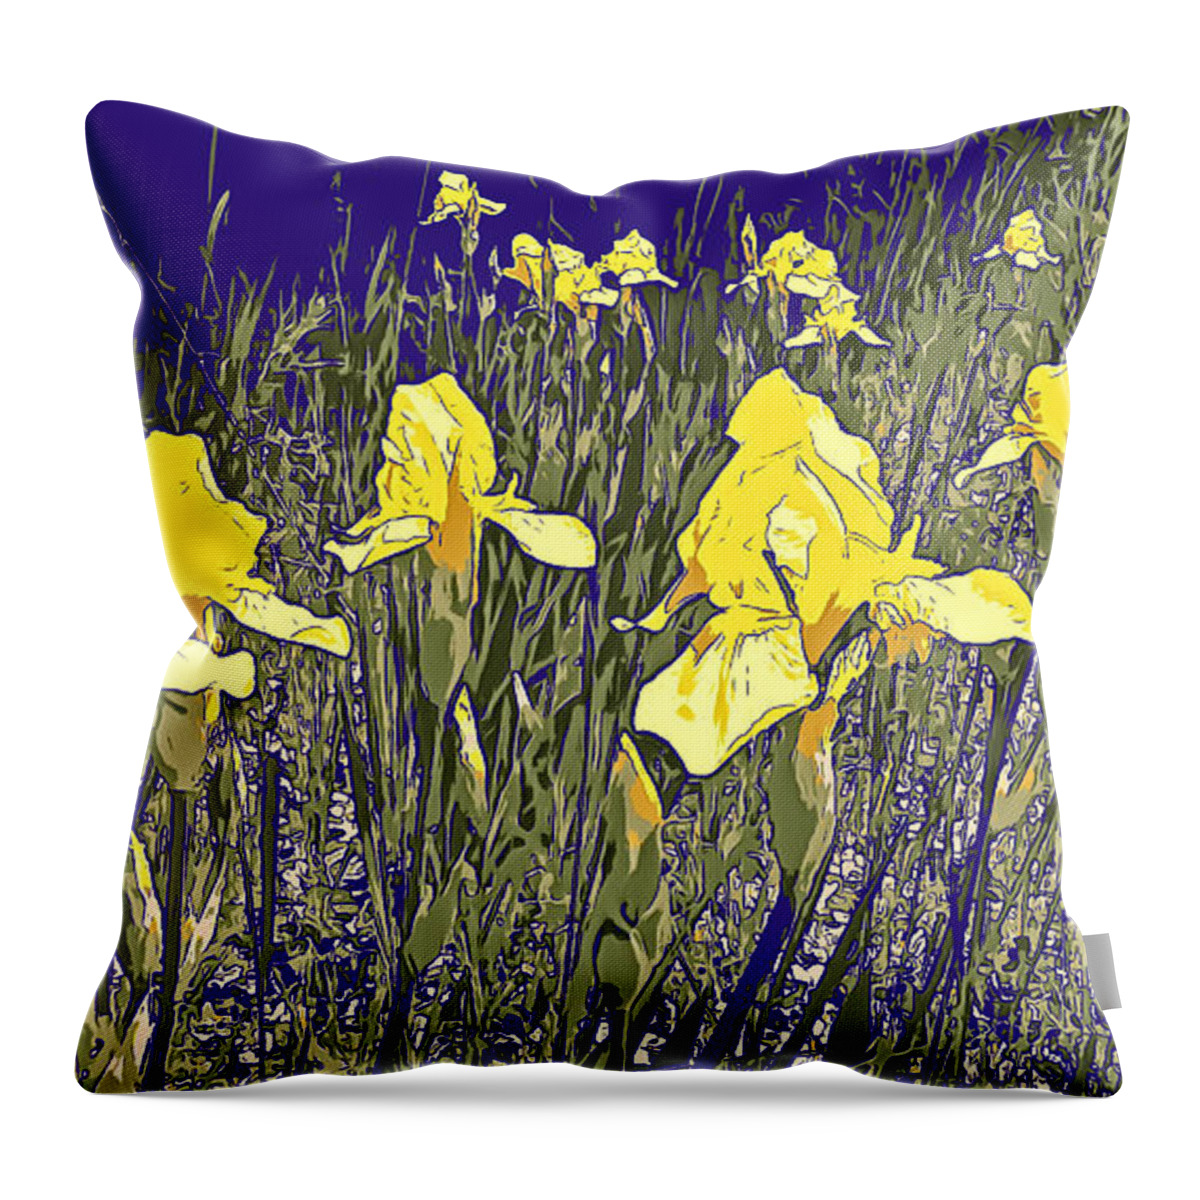 Iris Throw Pillow featuring the photograph Irises by Robert Bissett